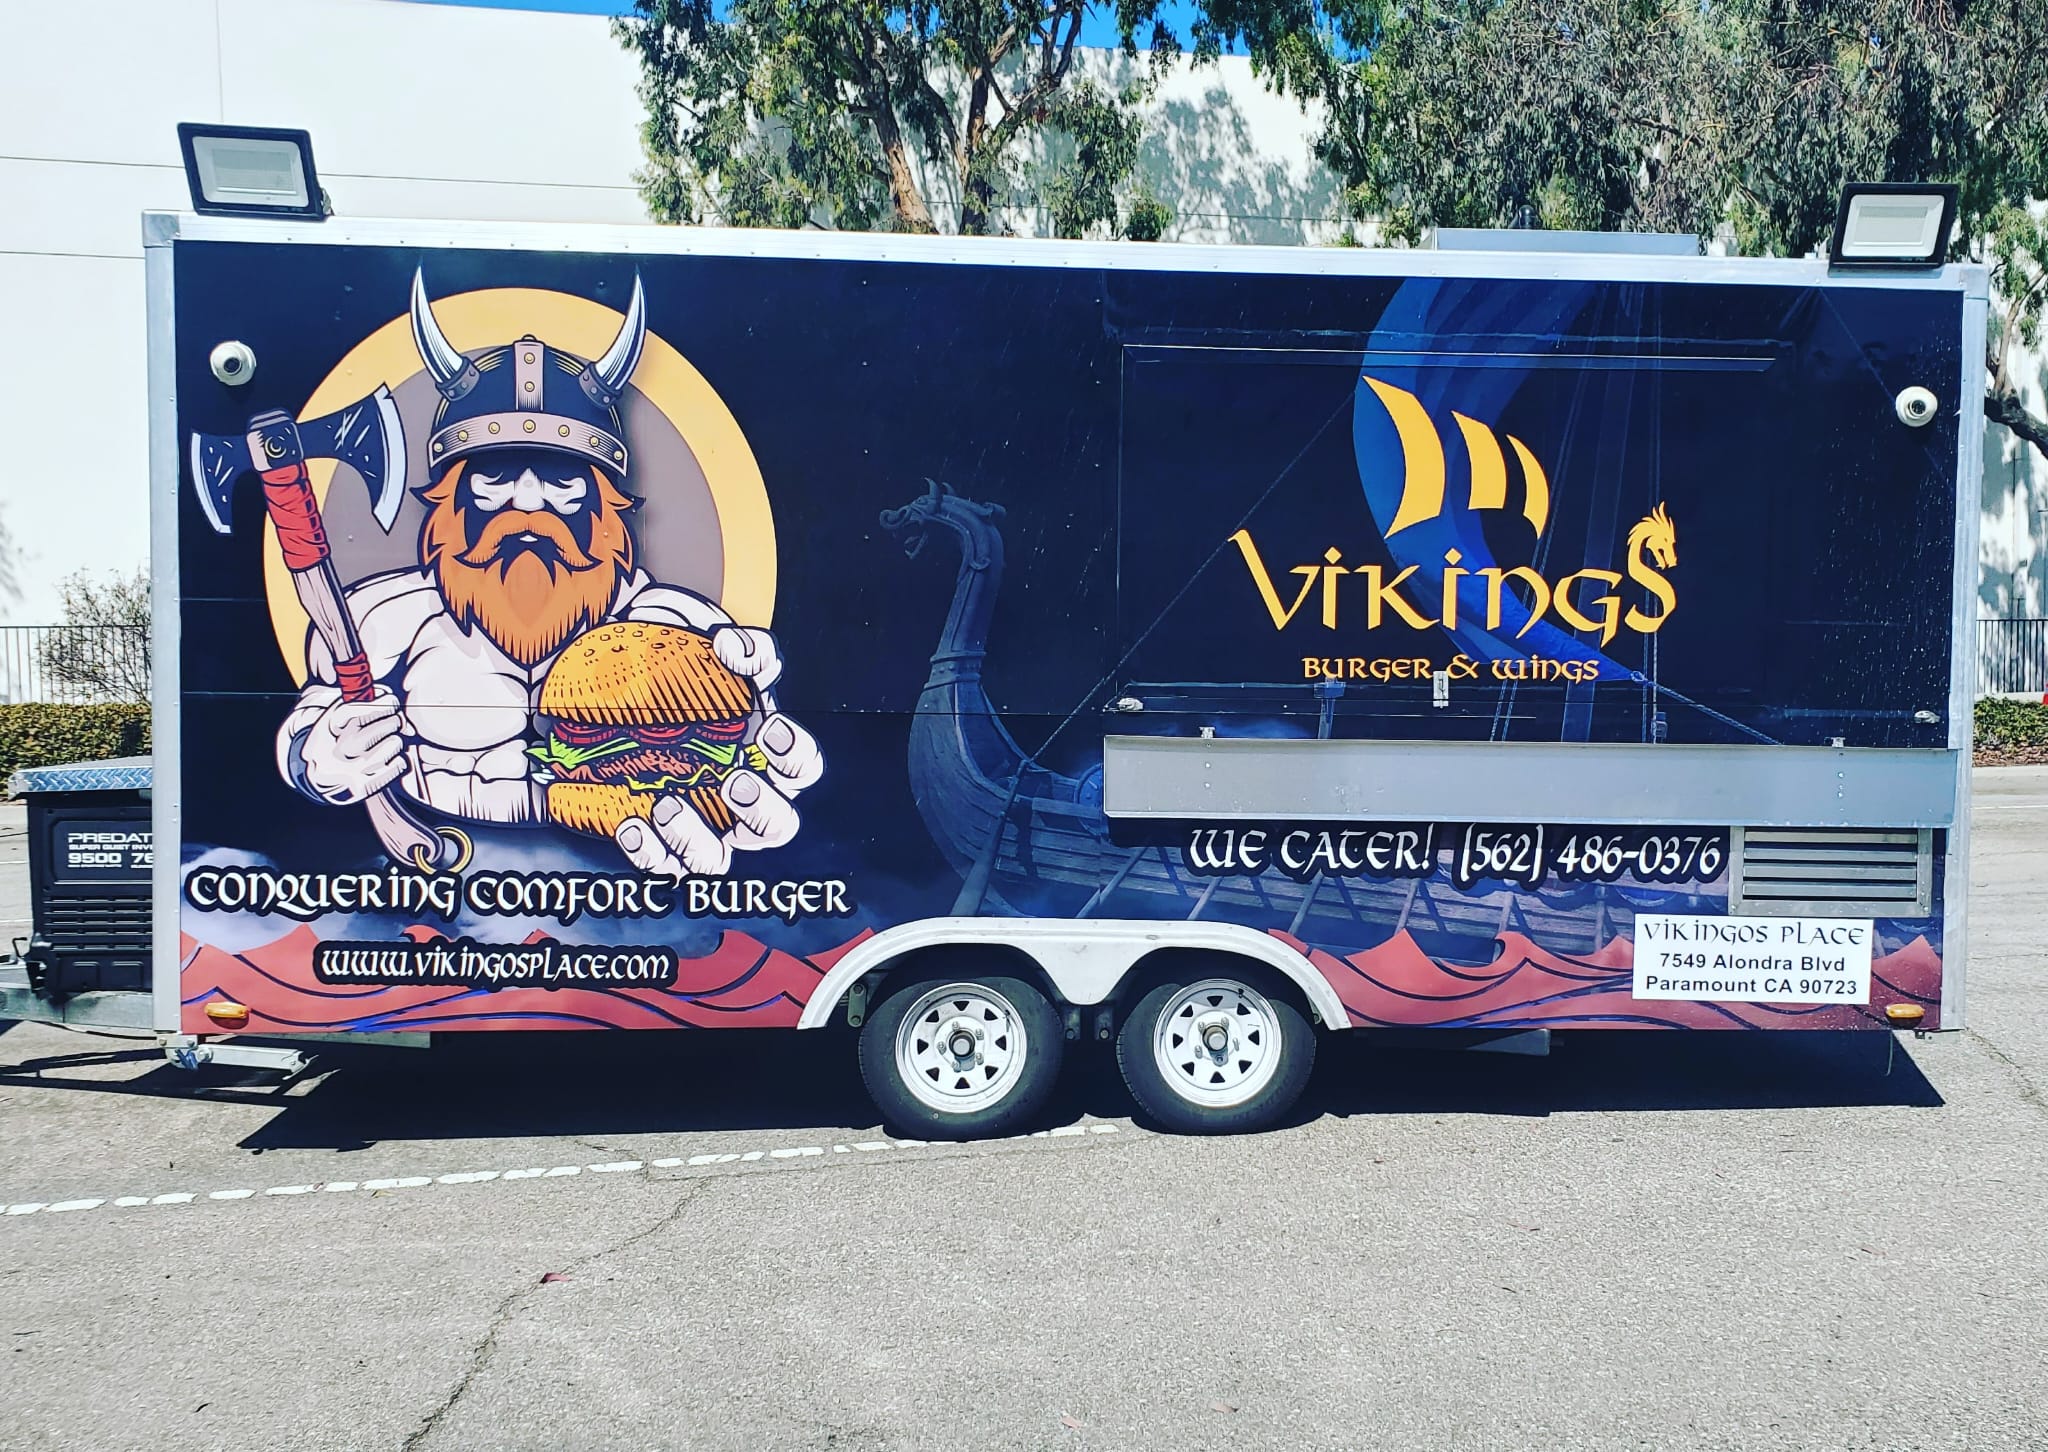 Vikings burger & wings